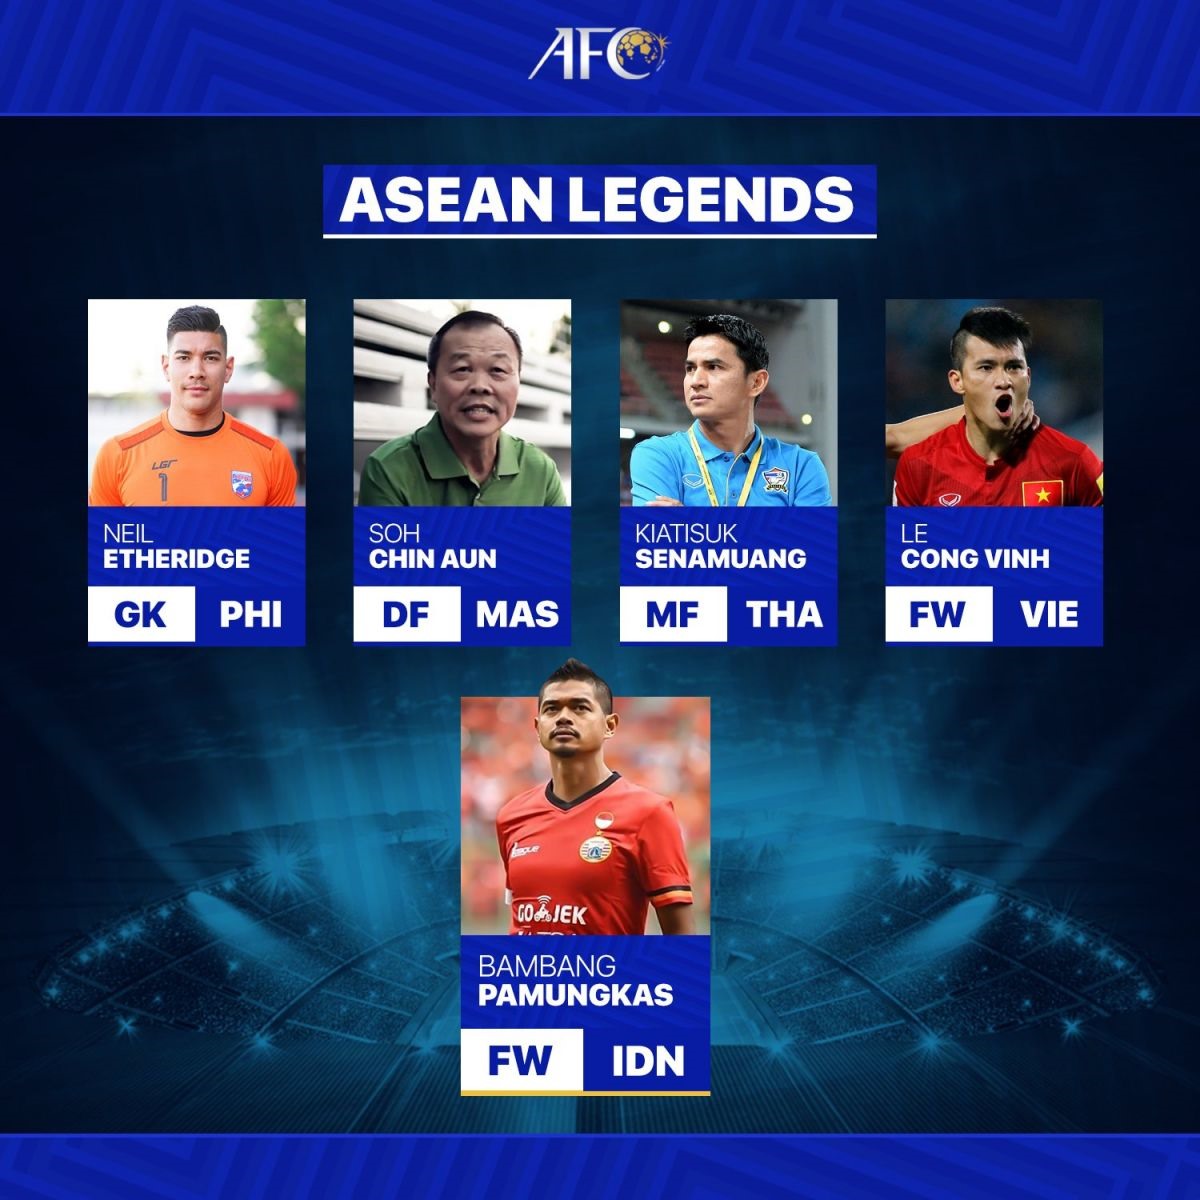 Tốp 5 huyền thoại của bóng đá Đông Nam Á theo bình chọn của AFC. Ảnh: Siamsport.